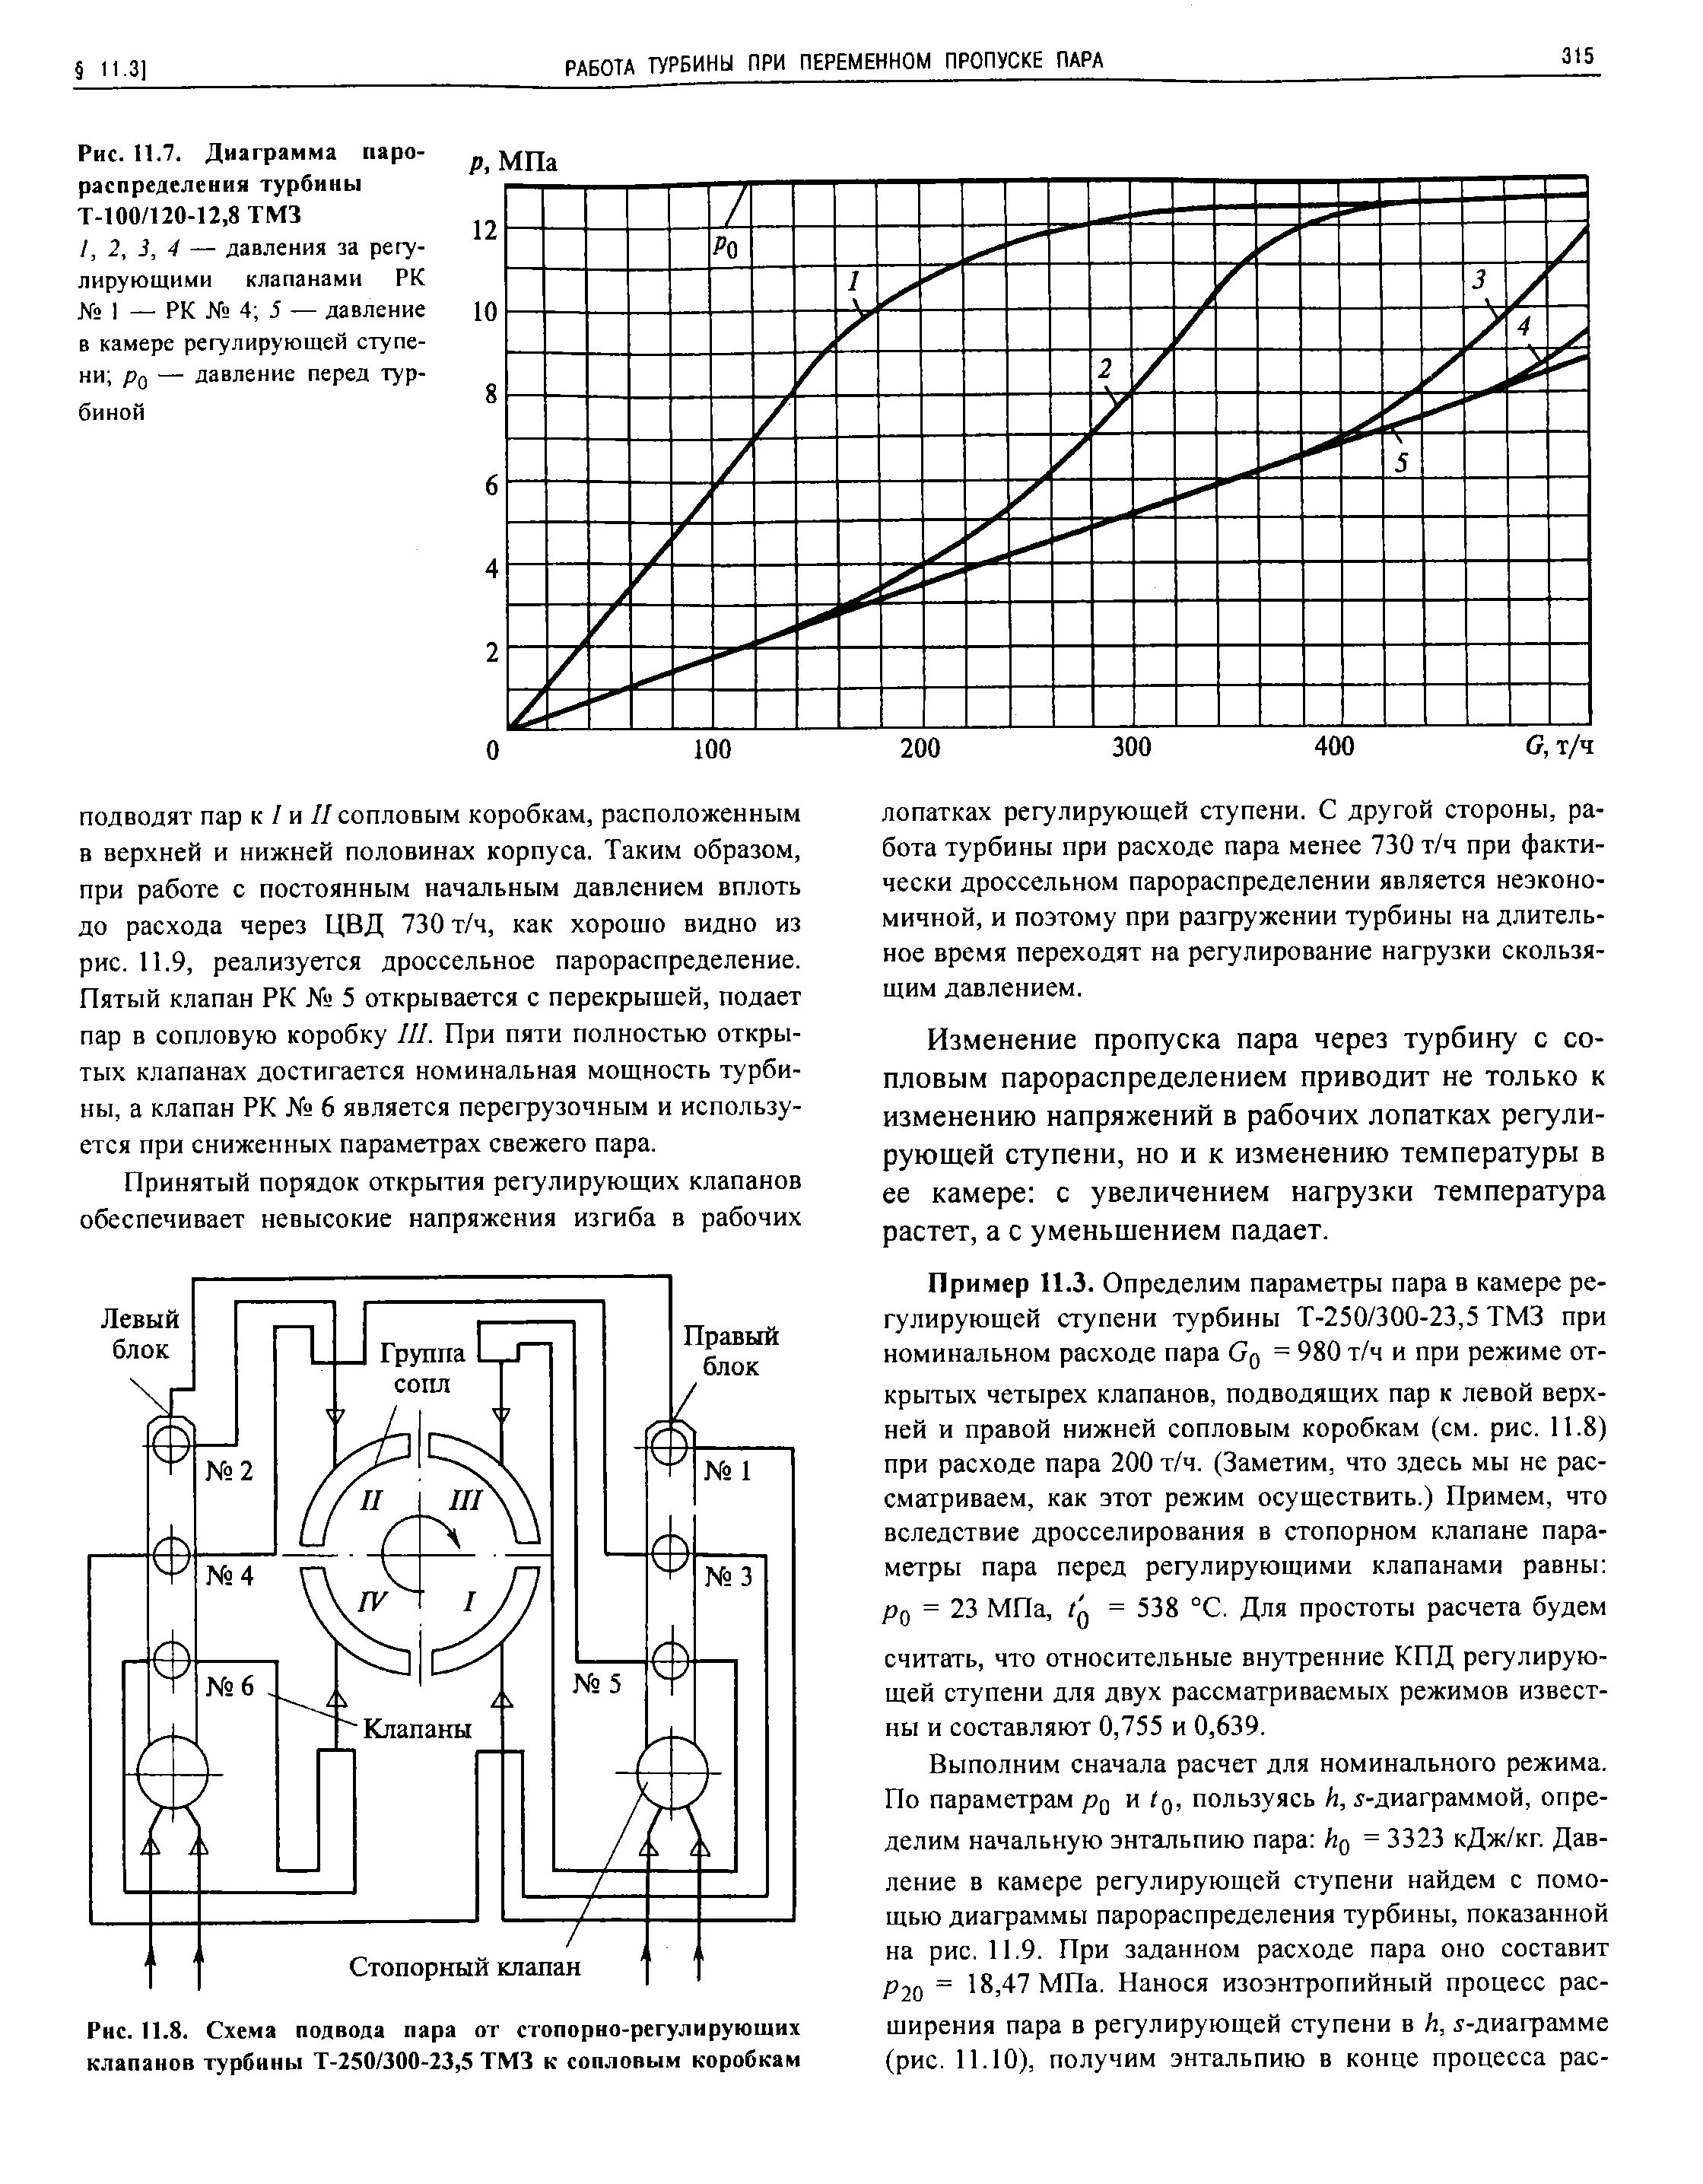 Рис. П.7. Диаграмма парораспределения турбины Т-100/120-12,8 ТМЗ
